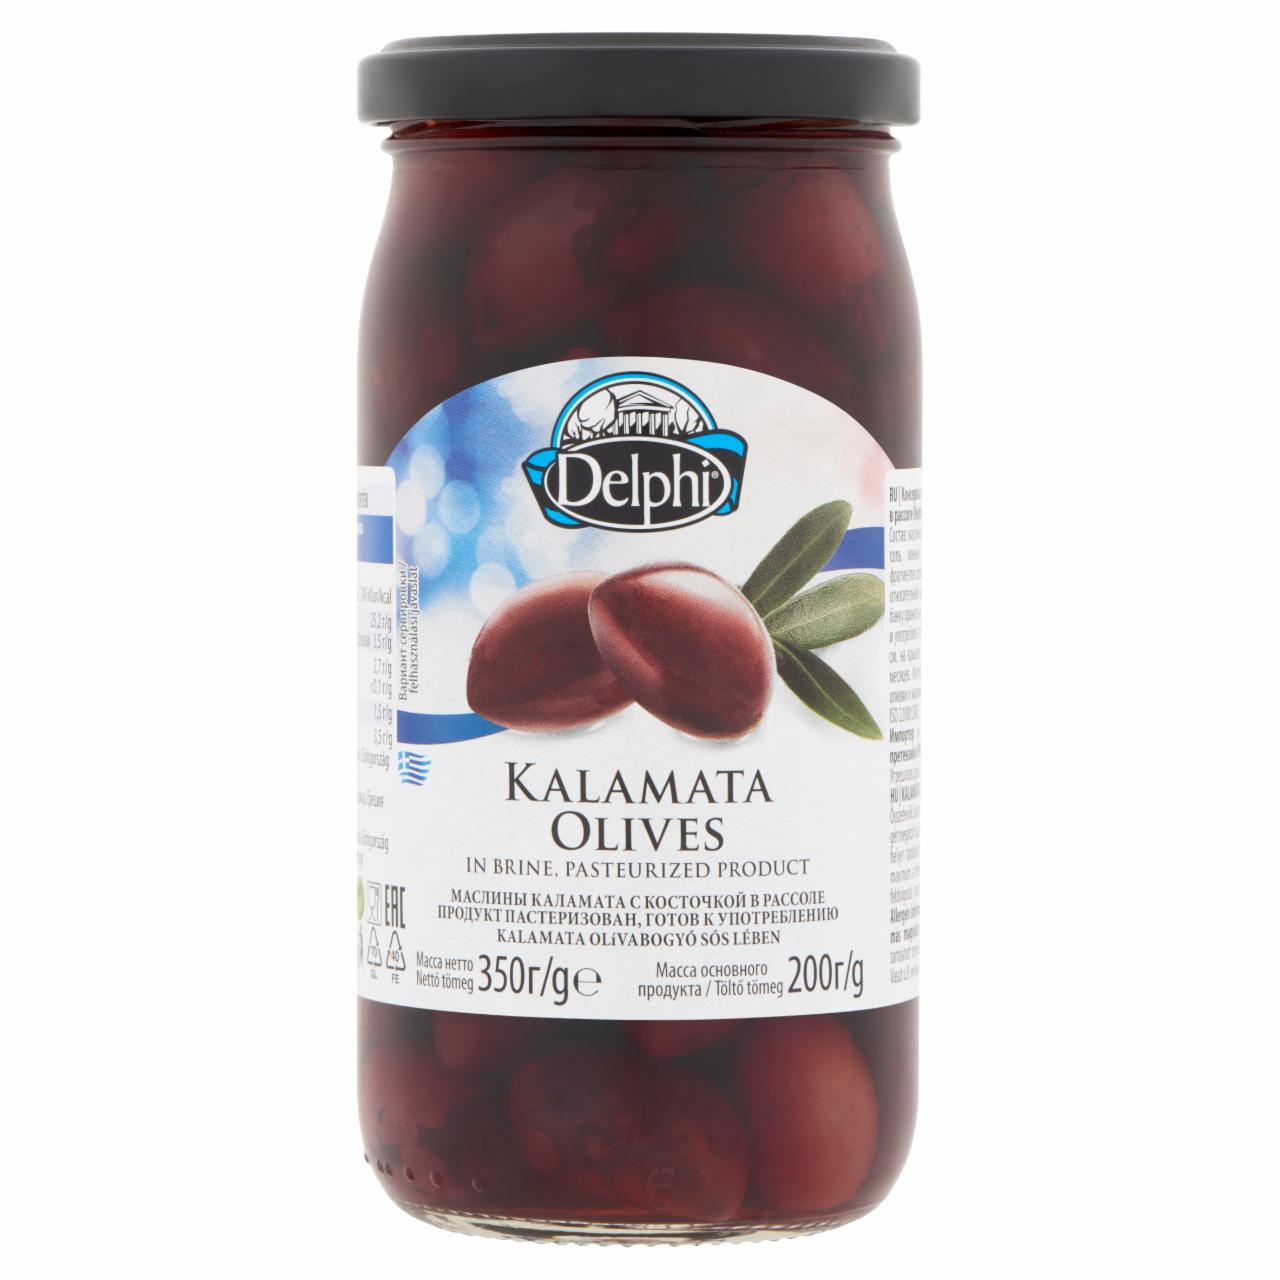 Képek - Delphi Kalamata olívabogyó sós lében 350 g